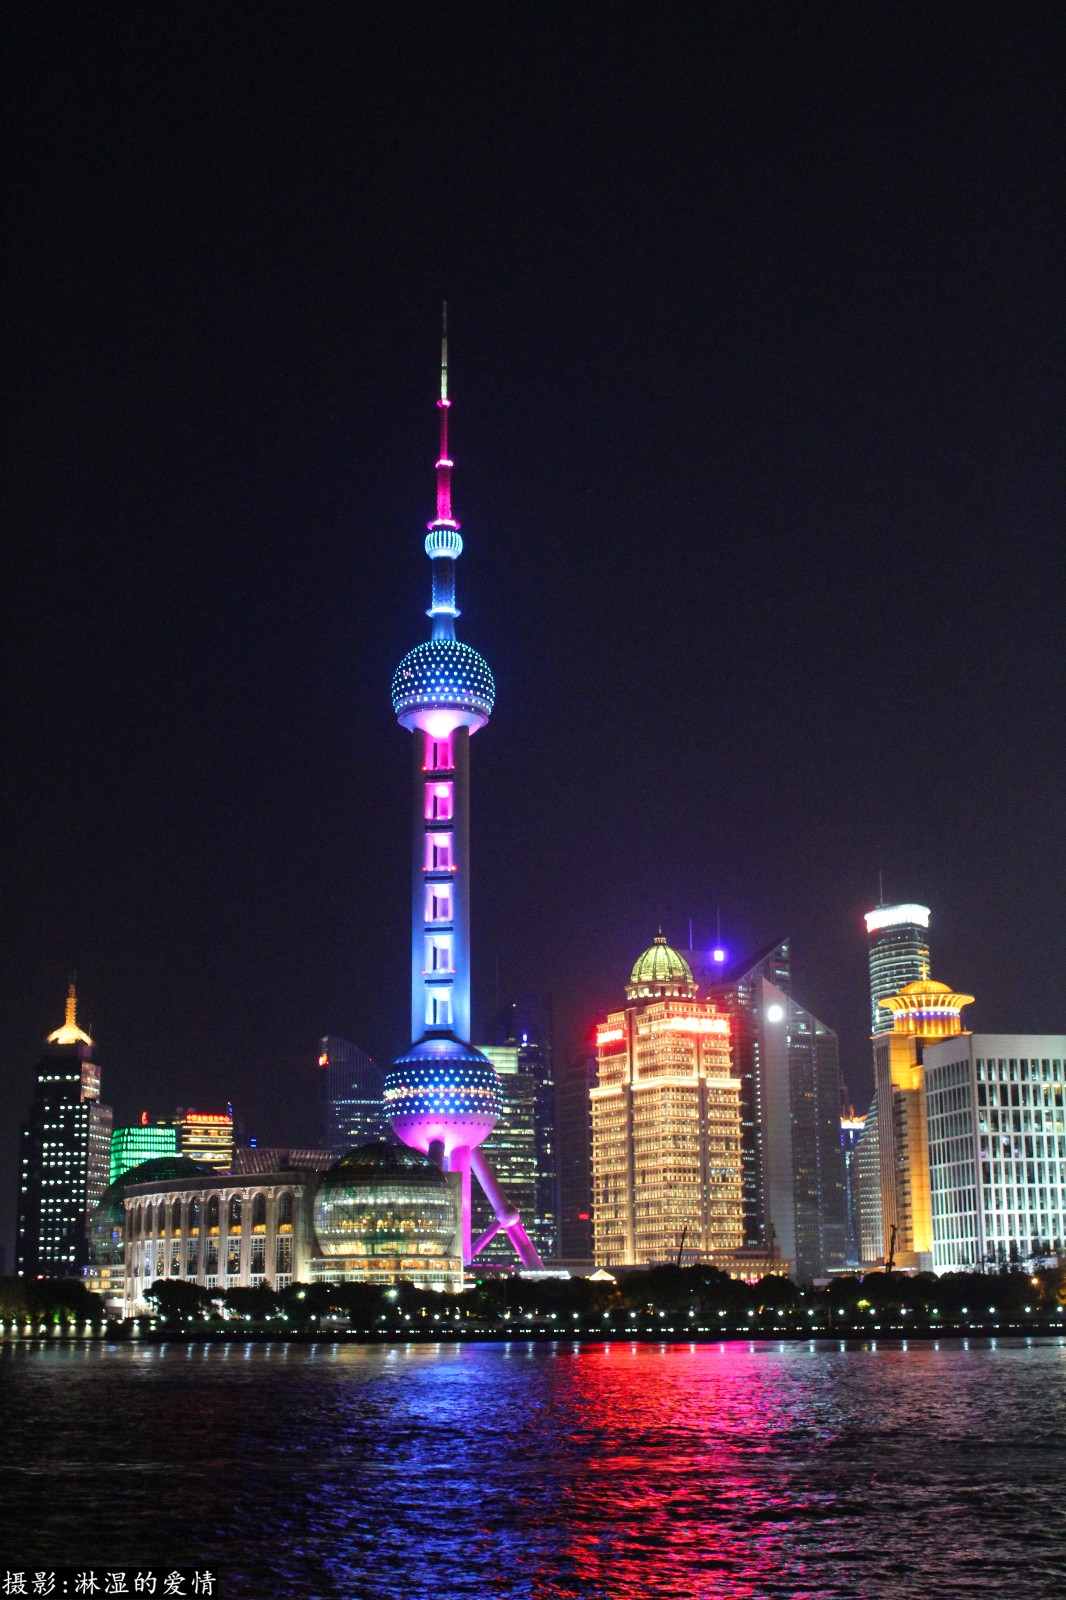 上海外滩夜景实拍:每一张照片都是美得窒息的画面!